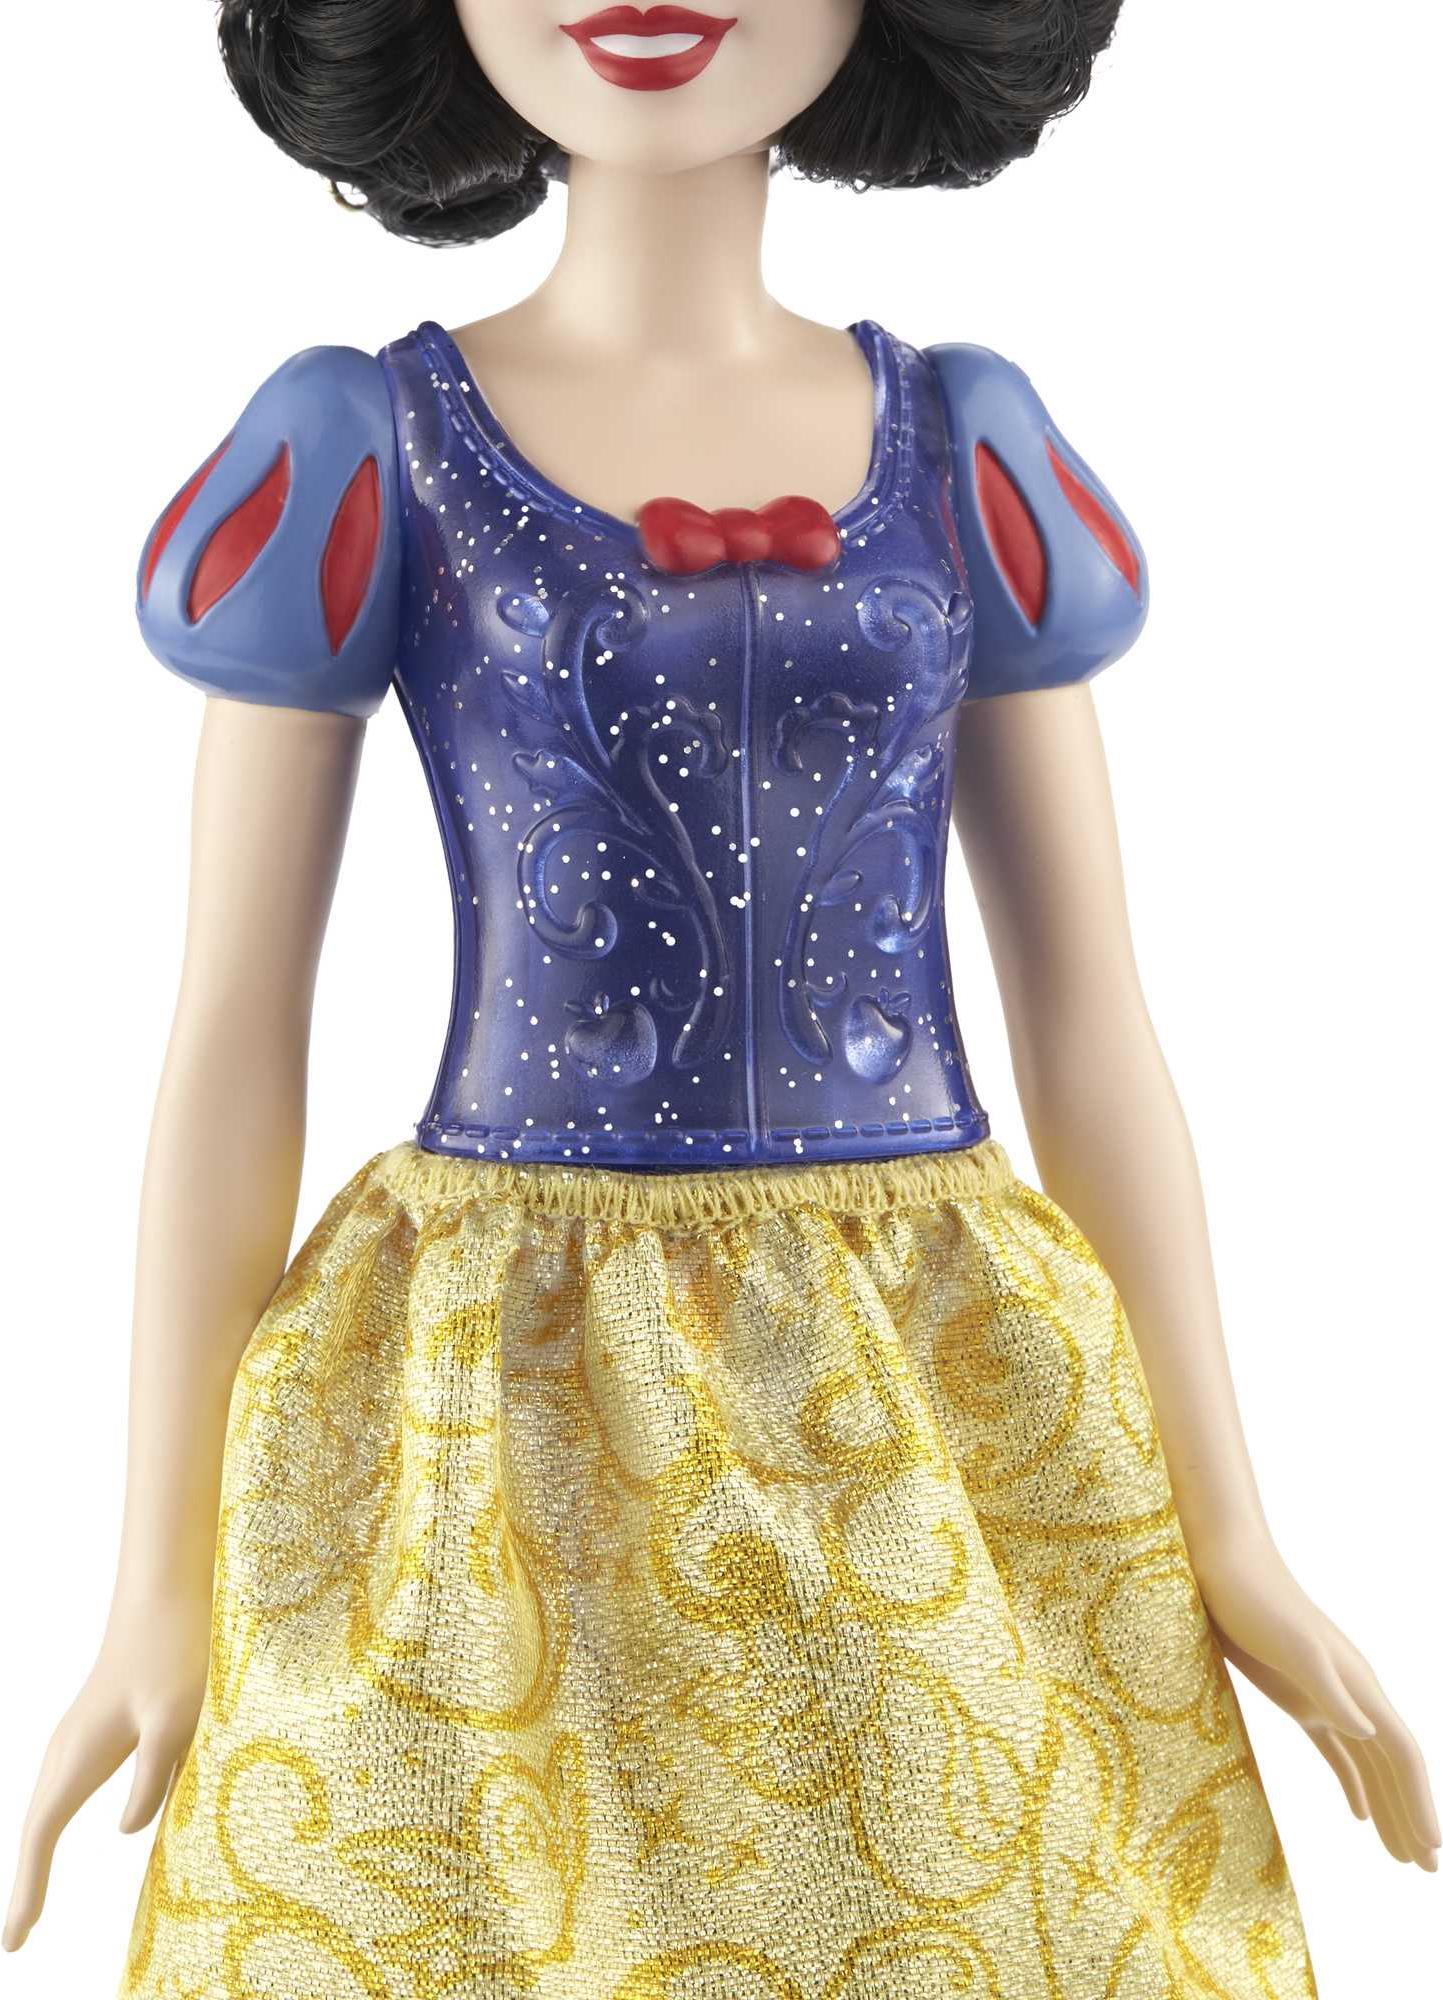 Disney Princess Snow White - Modepuppe - Weiblich - 3 Jahr(e) - Mädchen - 279,4 mm - 50 g (HLW08) von Mattel